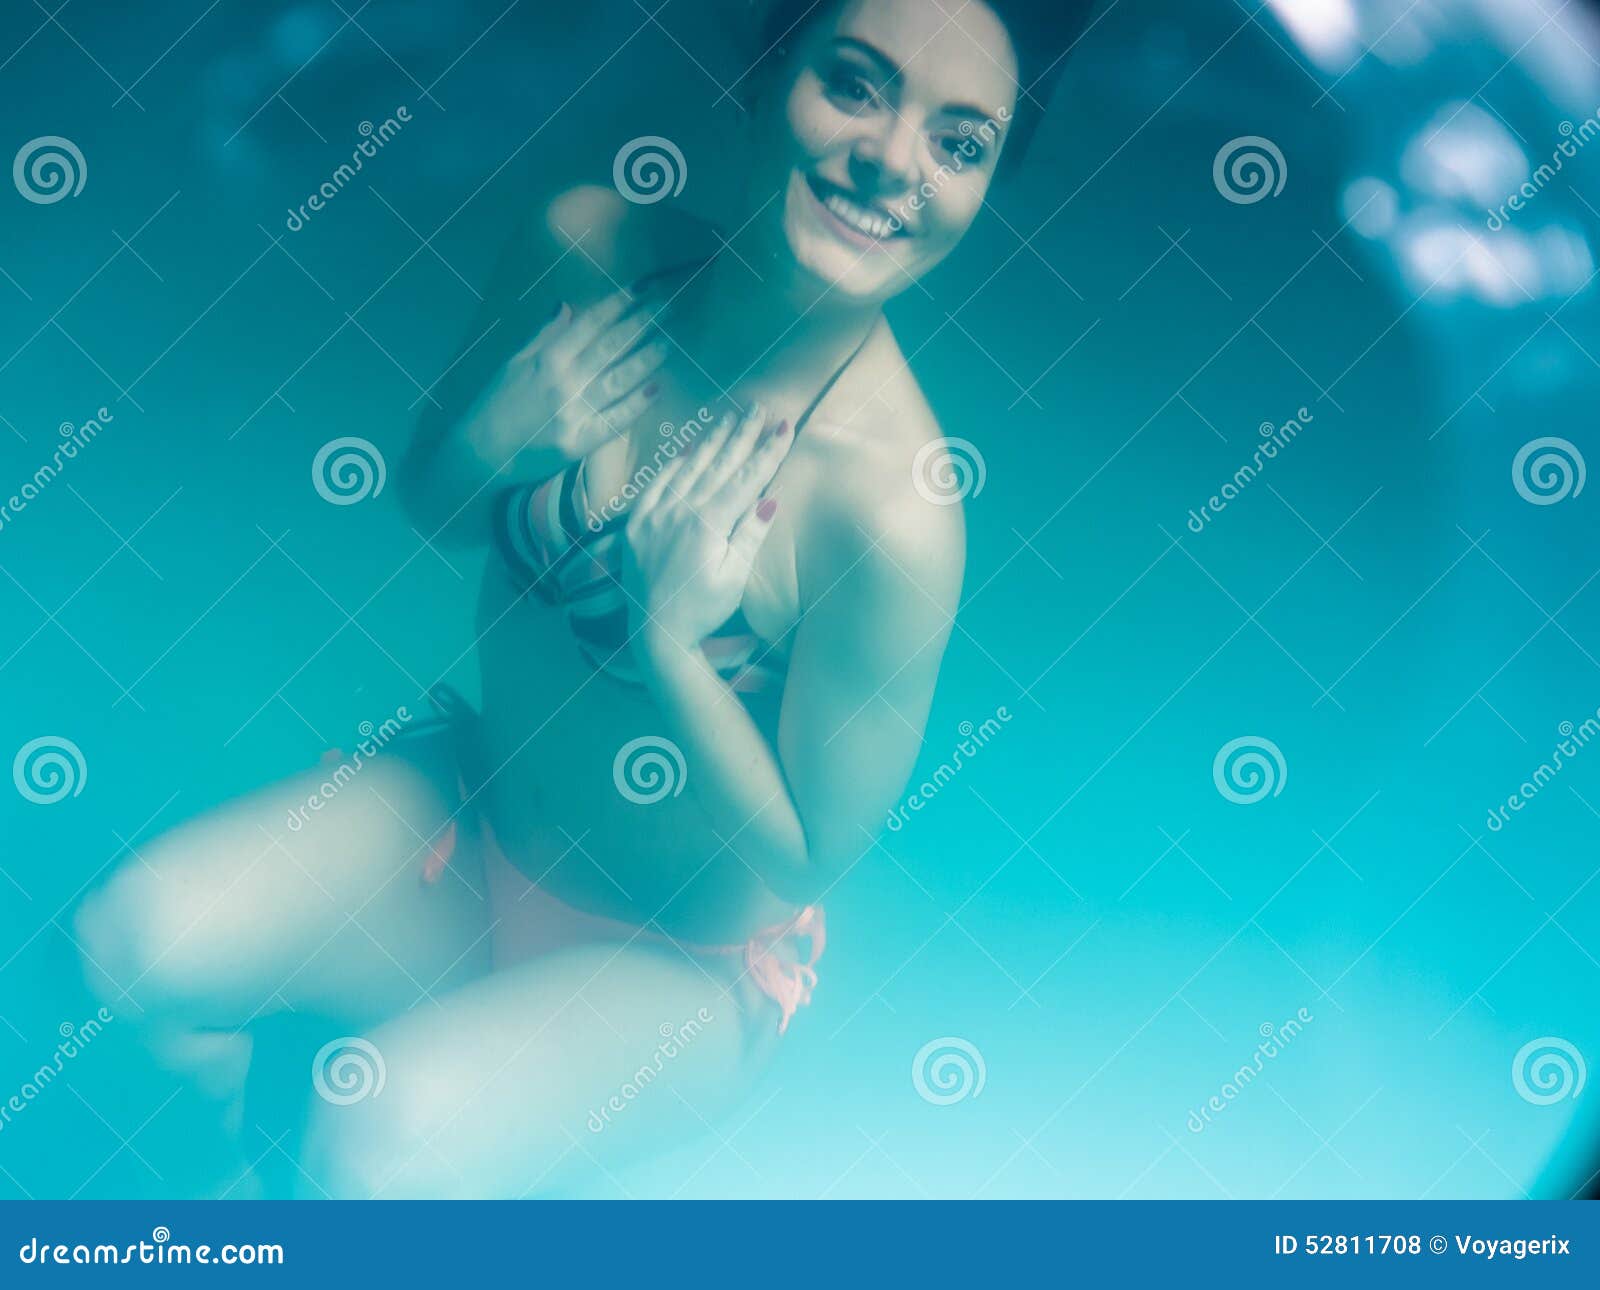 bikini girl photo underwater